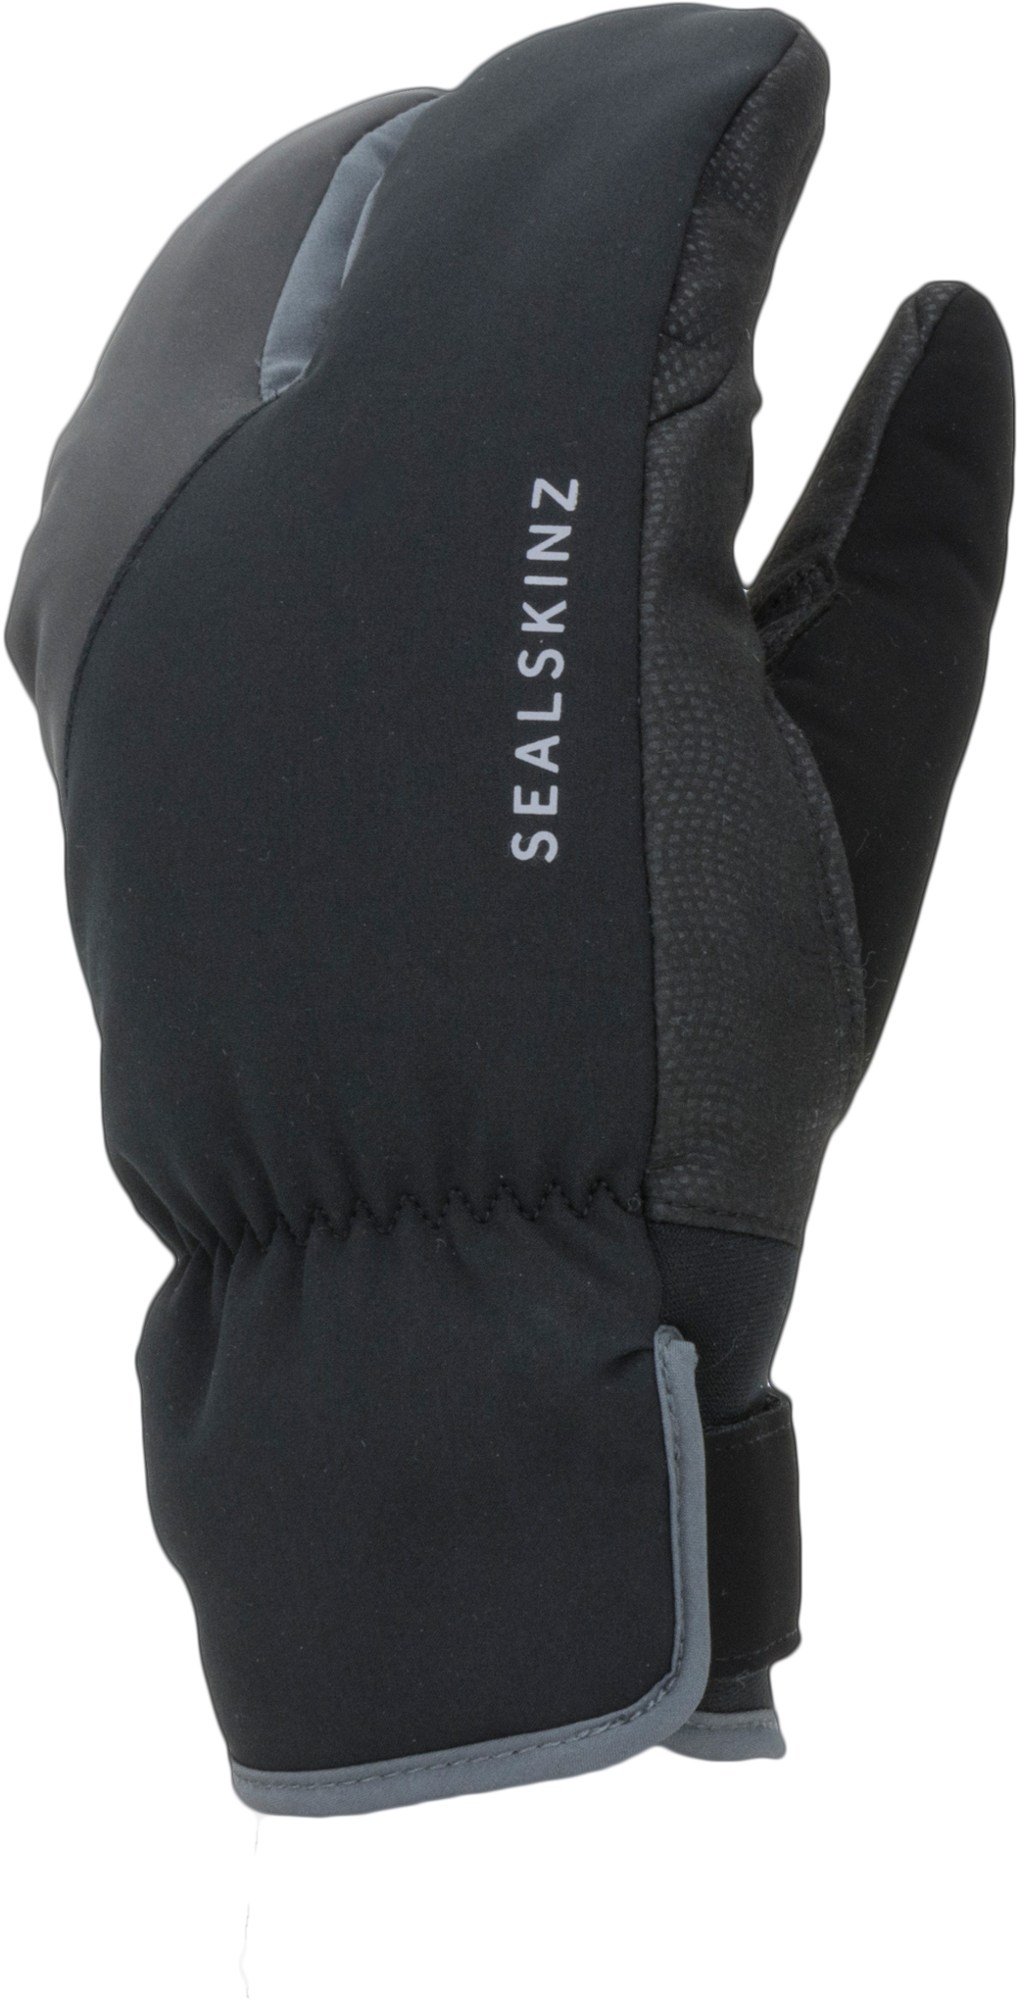 Велосипедные перчатки Barwick с раздвоенными пальцами для экстремальной холодной погоды Sealskinz, черный